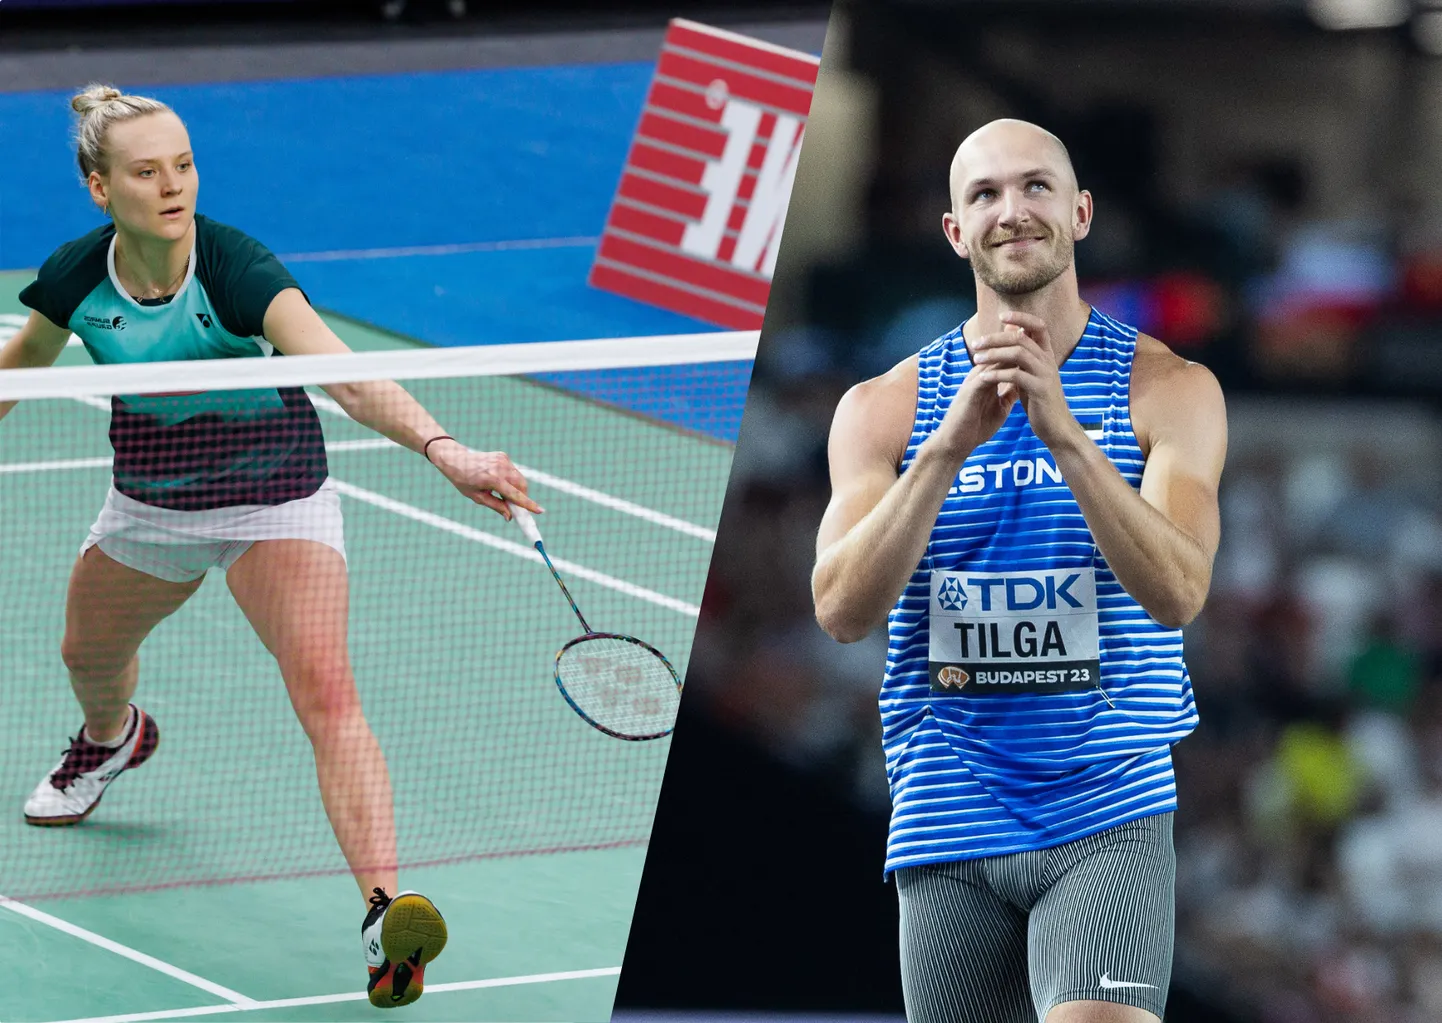 Tartu 2023. aasta parimad sportlased on Kristin Kuuba (vasakul) ja Karel Tilga.